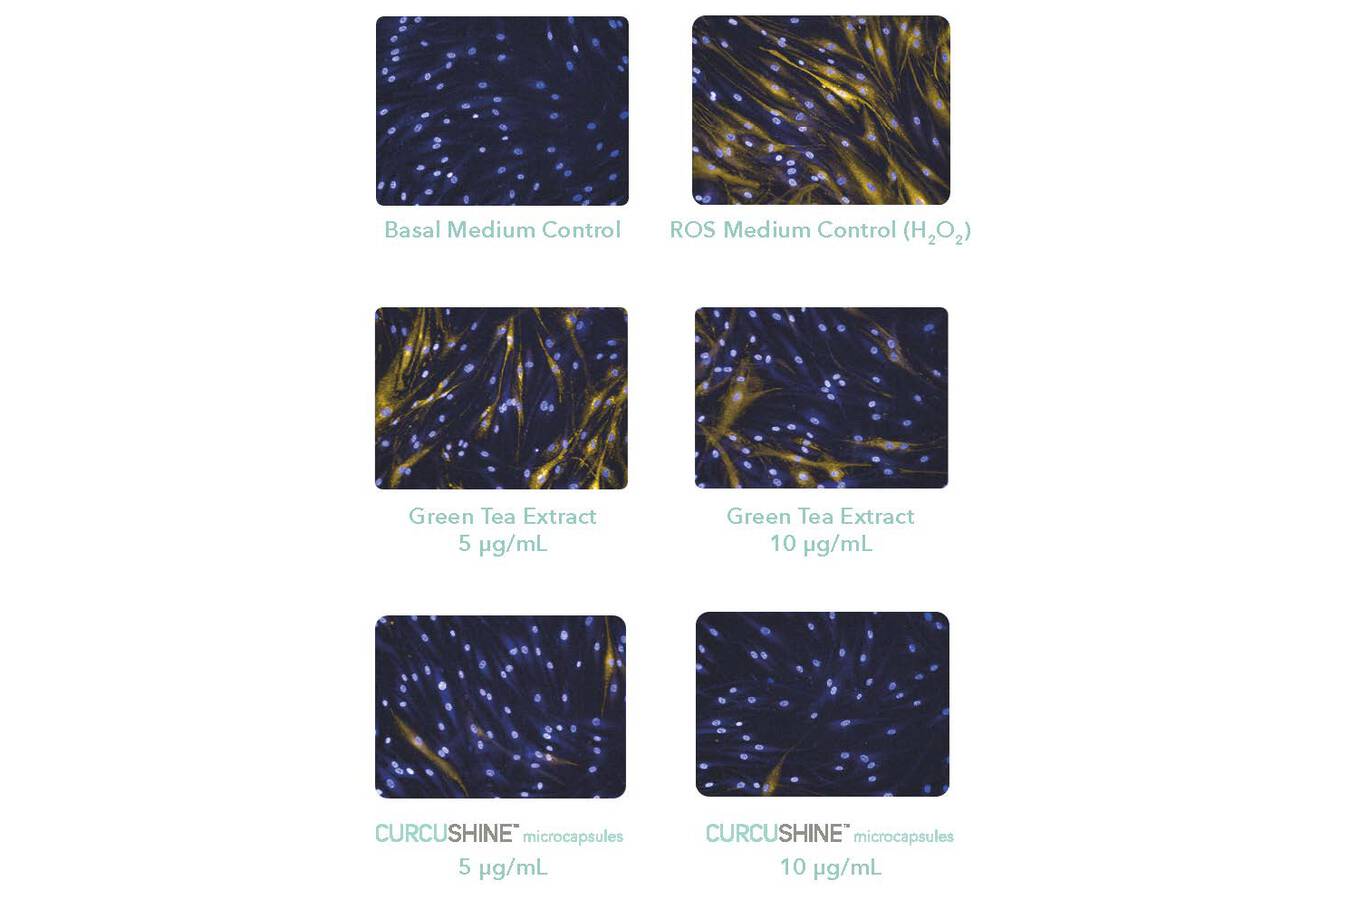 Abbildung 5: Die schützende Wirkung der Curcushine-Mikrokapseln auf menschliche dermale Fibroblasten (HDFa) gegen reaktive Sauerstoffspezies (ROS) im Vergleich zu 10 µg/mL Grüntee-Extrakt. (Copyright: Nutraceutical Ingredients Lubrizol Life Science)